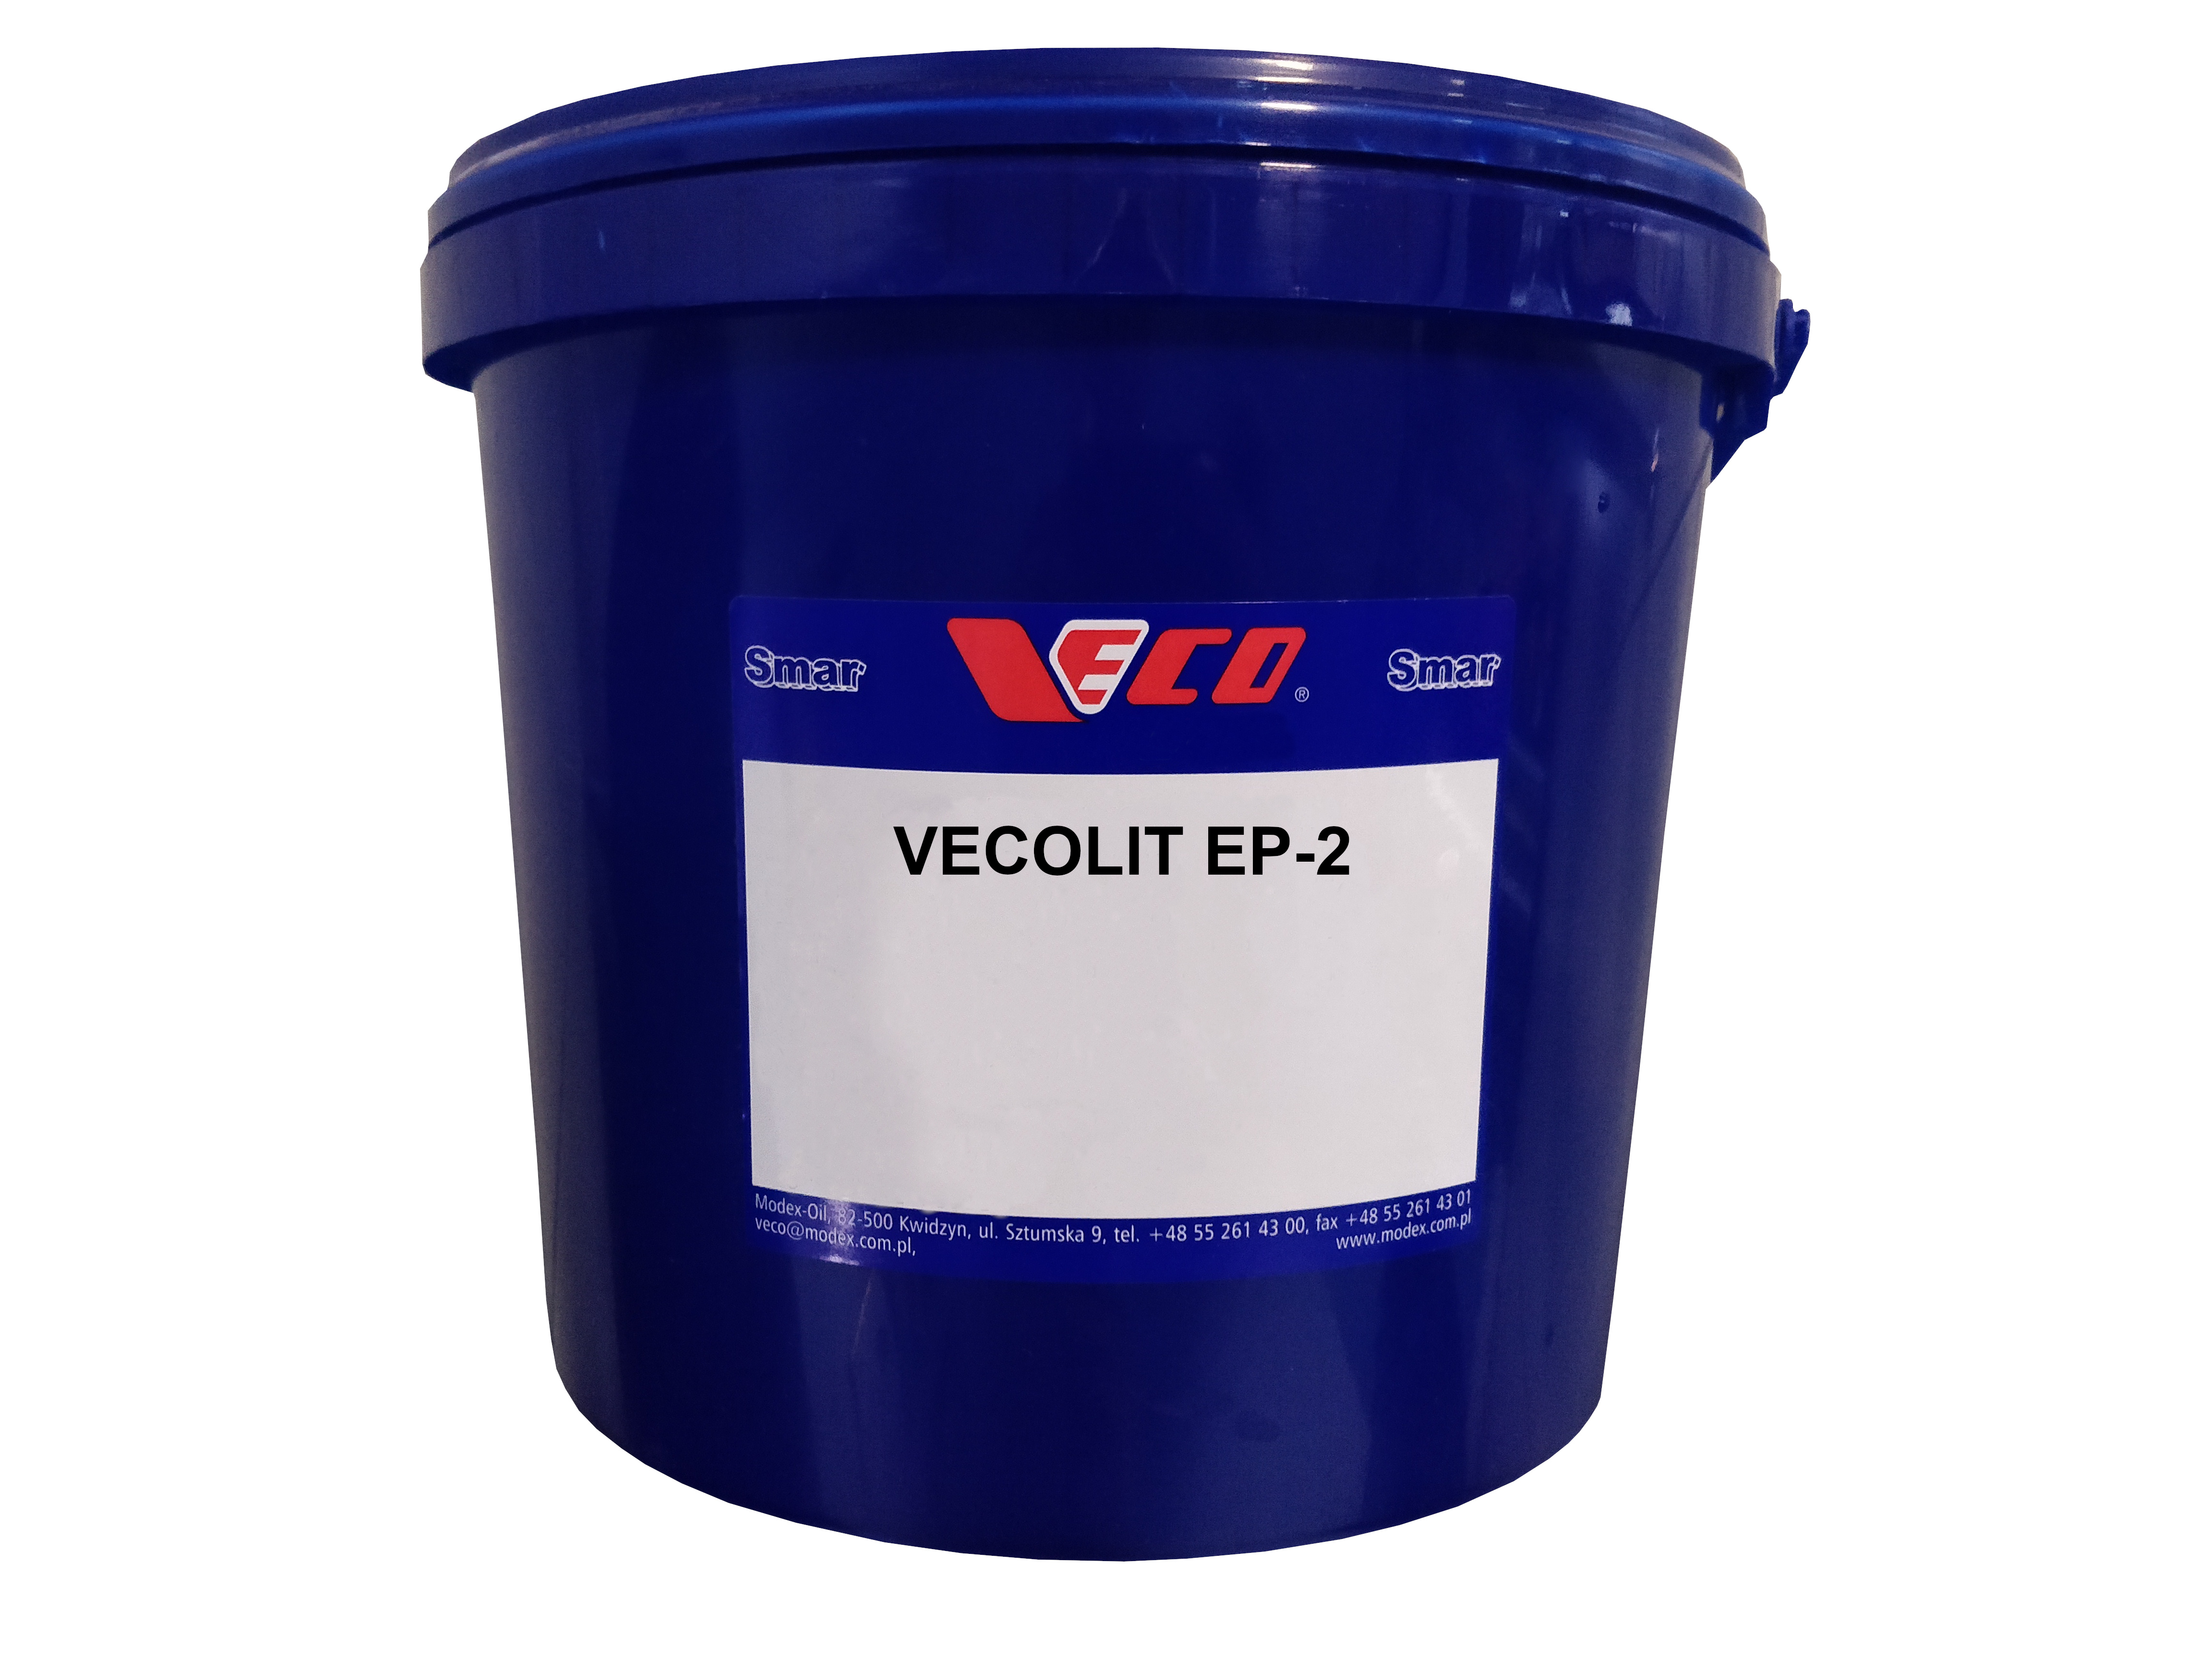 SMAR PLASTYCZNY VECOLIT EP-2 4,5 KG cena 14 zł/kg netto aktualna tylko dla zakupów paletowych 100 sztuk (450kg) class=